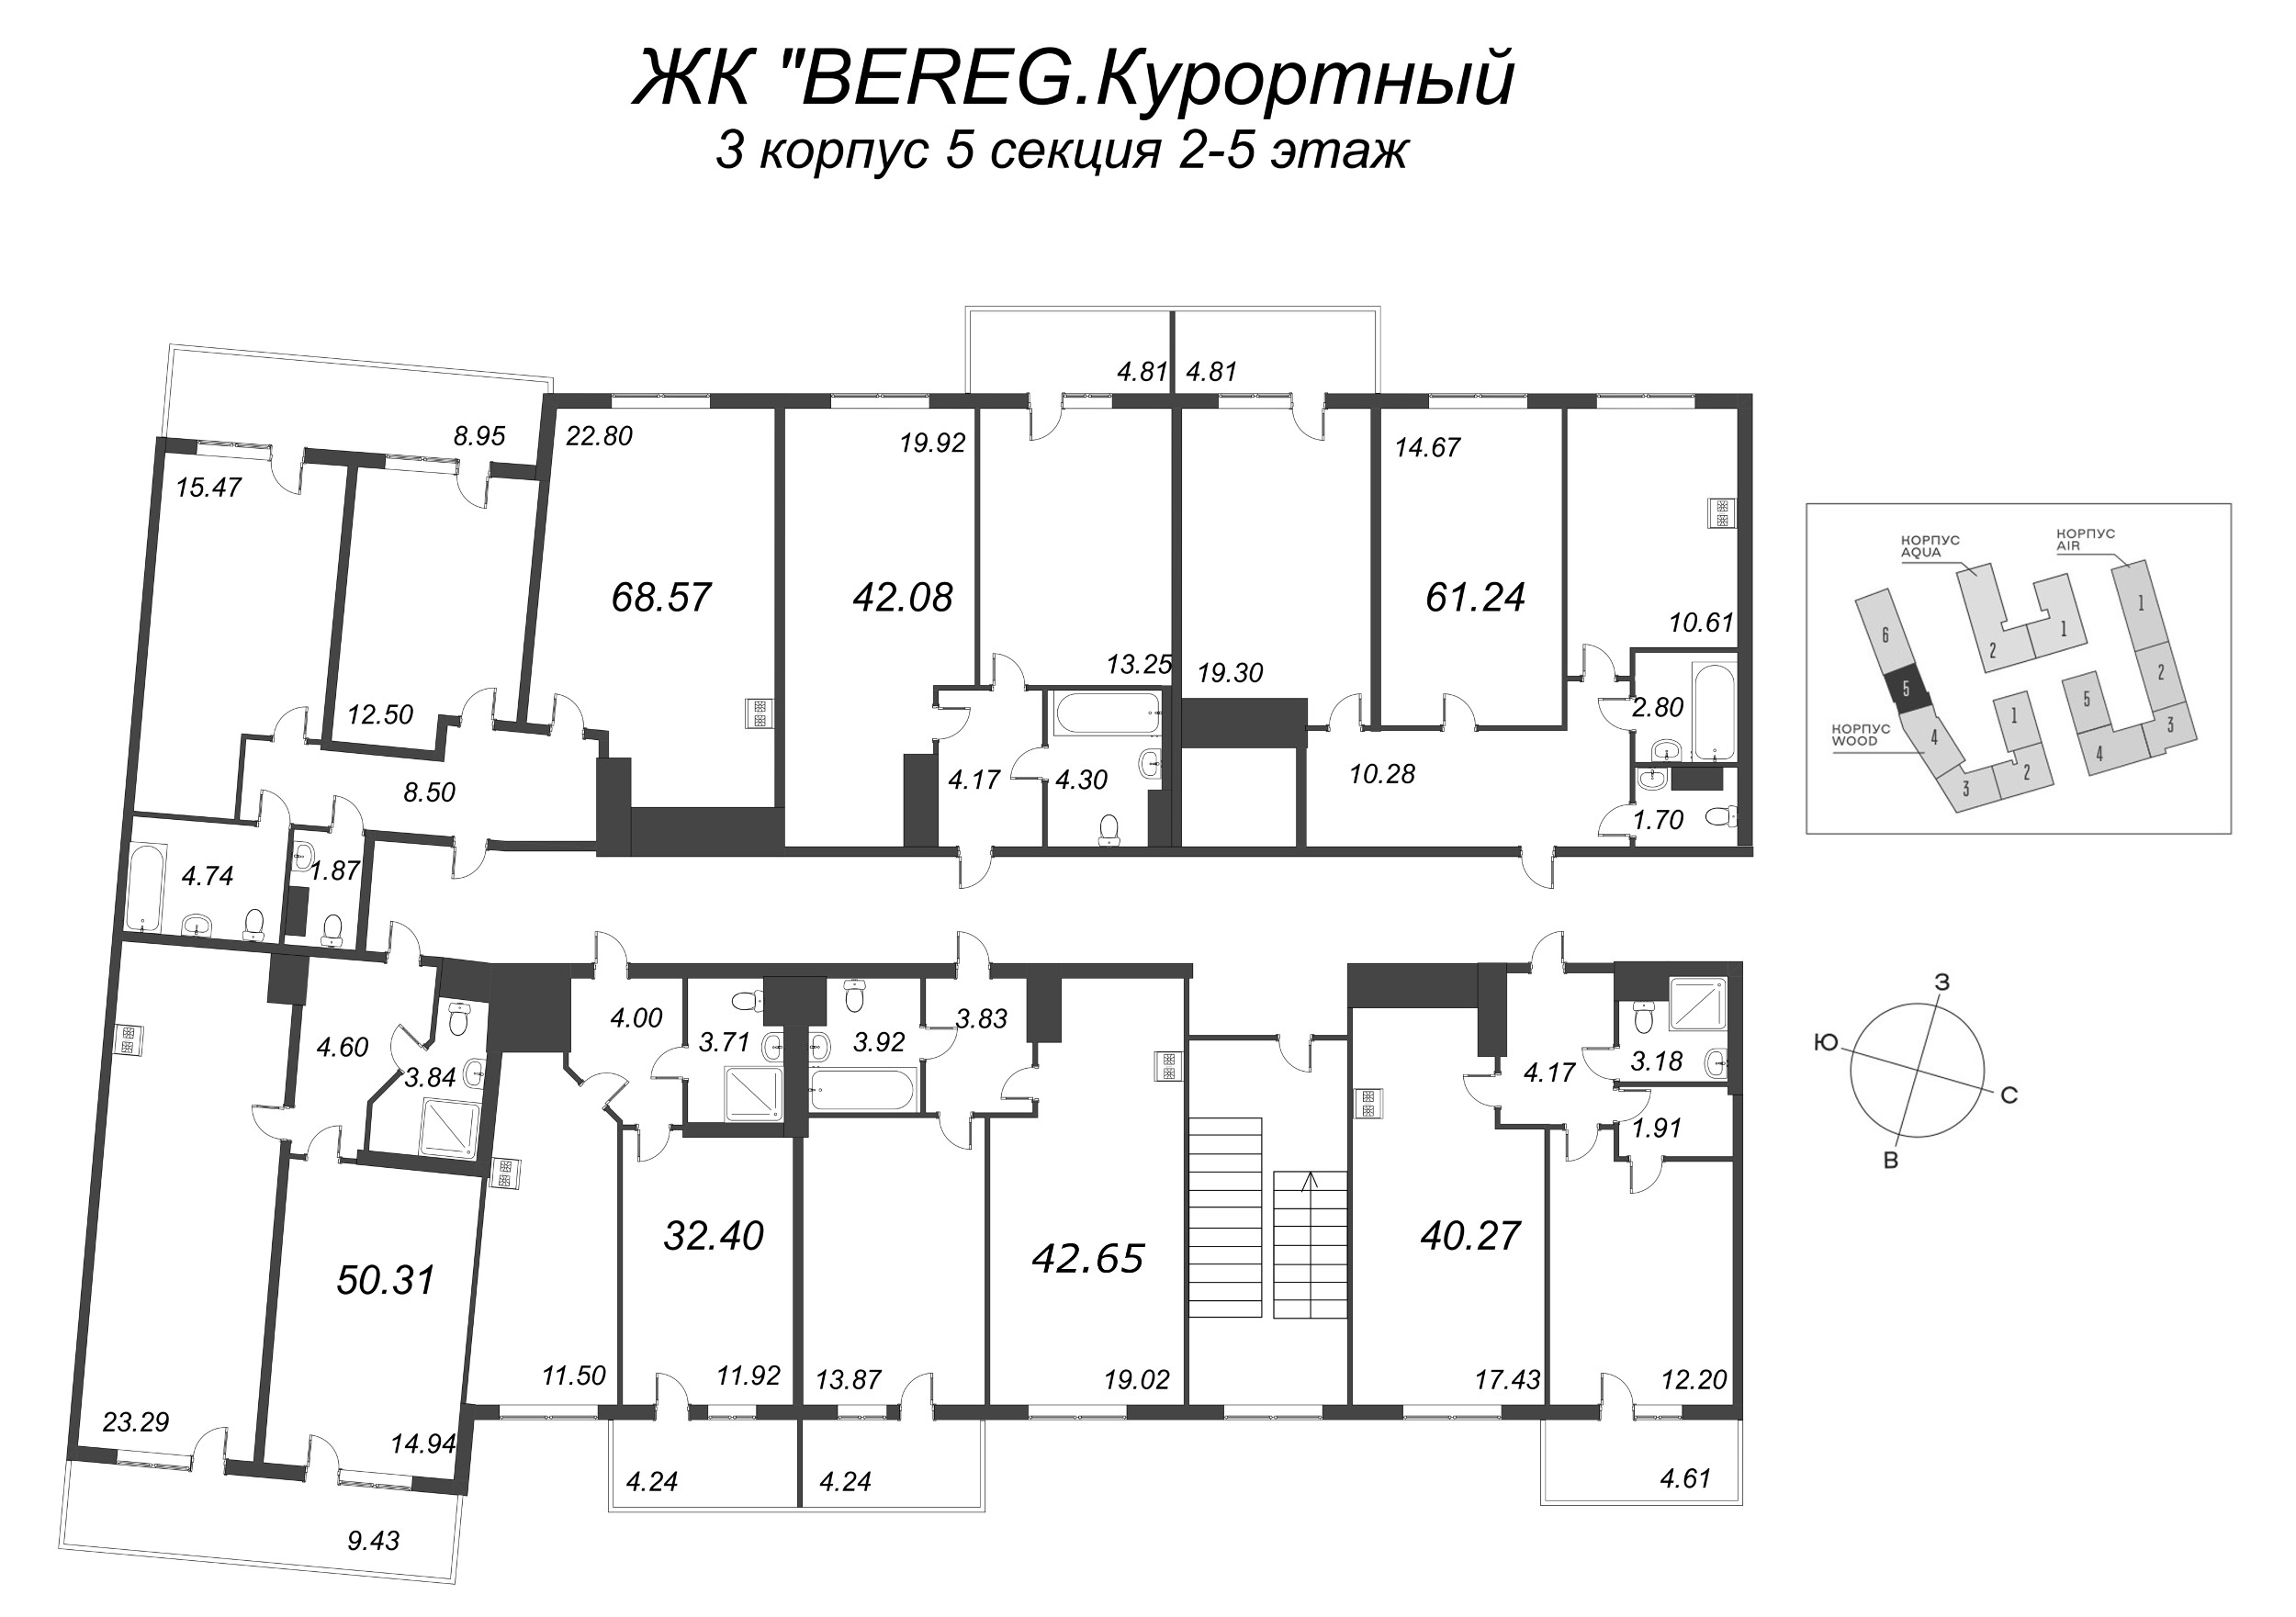 2-комнатная квартира, 61.24 м² в ЖК "Bereg. Курортный" - планировка этажа